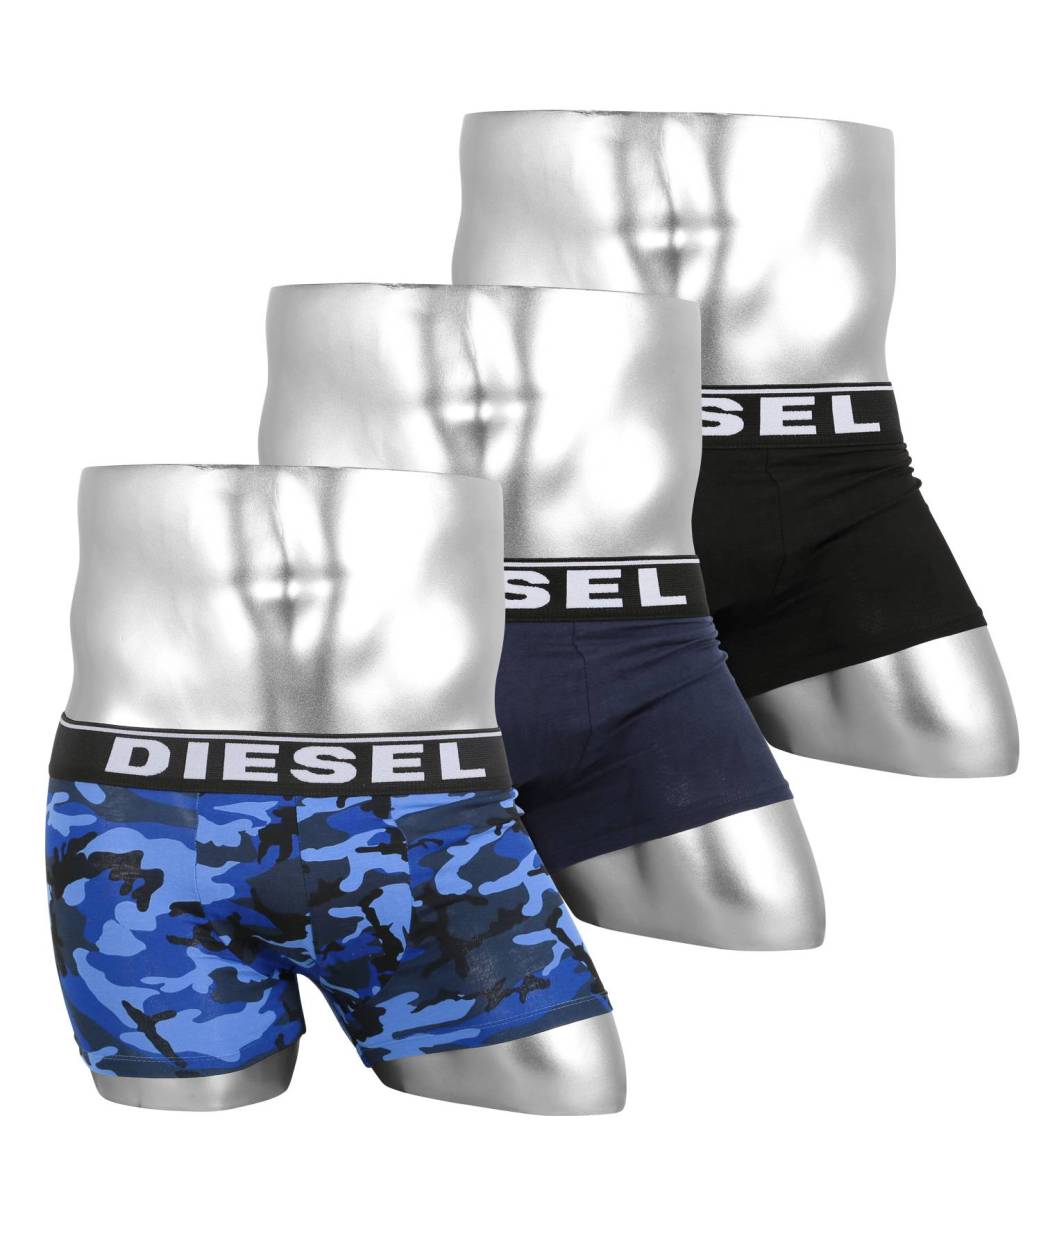 ディーゼル Diesel ボクサーパンツ メンズ 男性 下着 パンツ 3枚セット セット かっこいい 綿 ロゴ 無地 迷彩 星 ハート ブランド お得